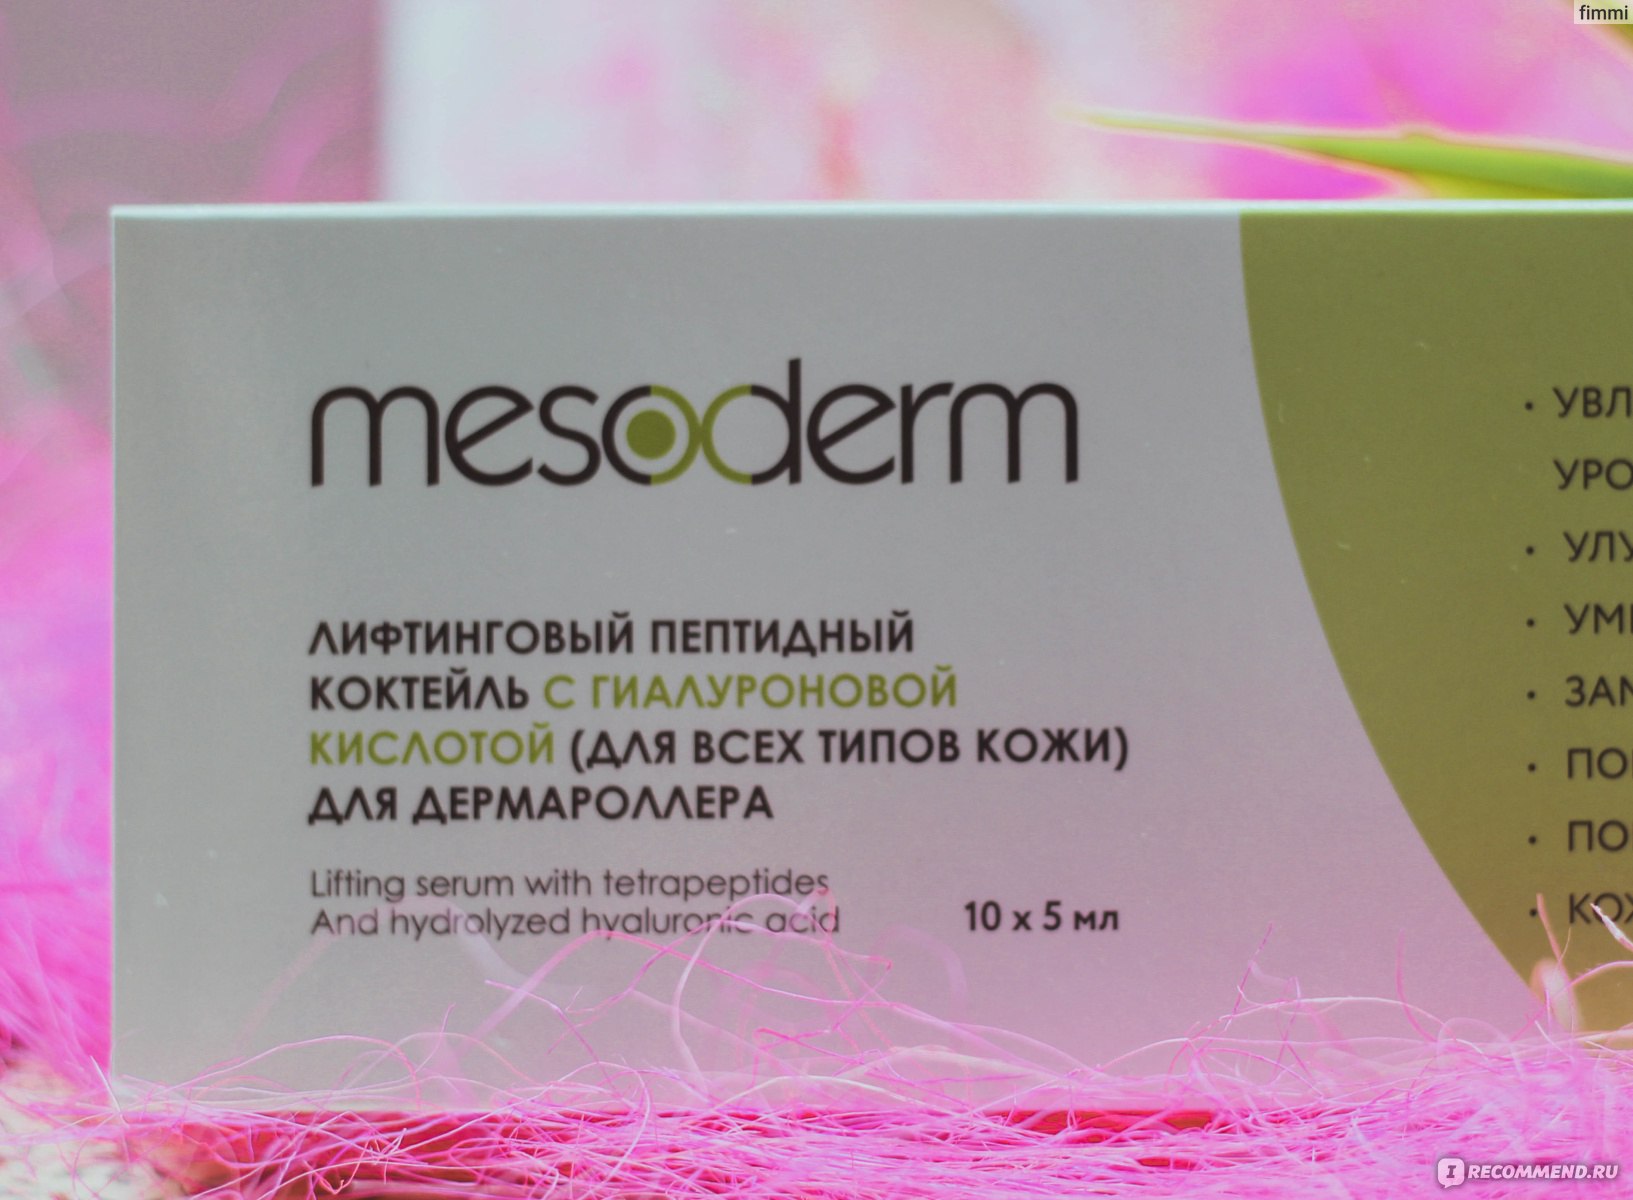 Сыворотка для лица Mesoderm Увлажняющий пептидный коктейль с гиалуроновой кислотой фото